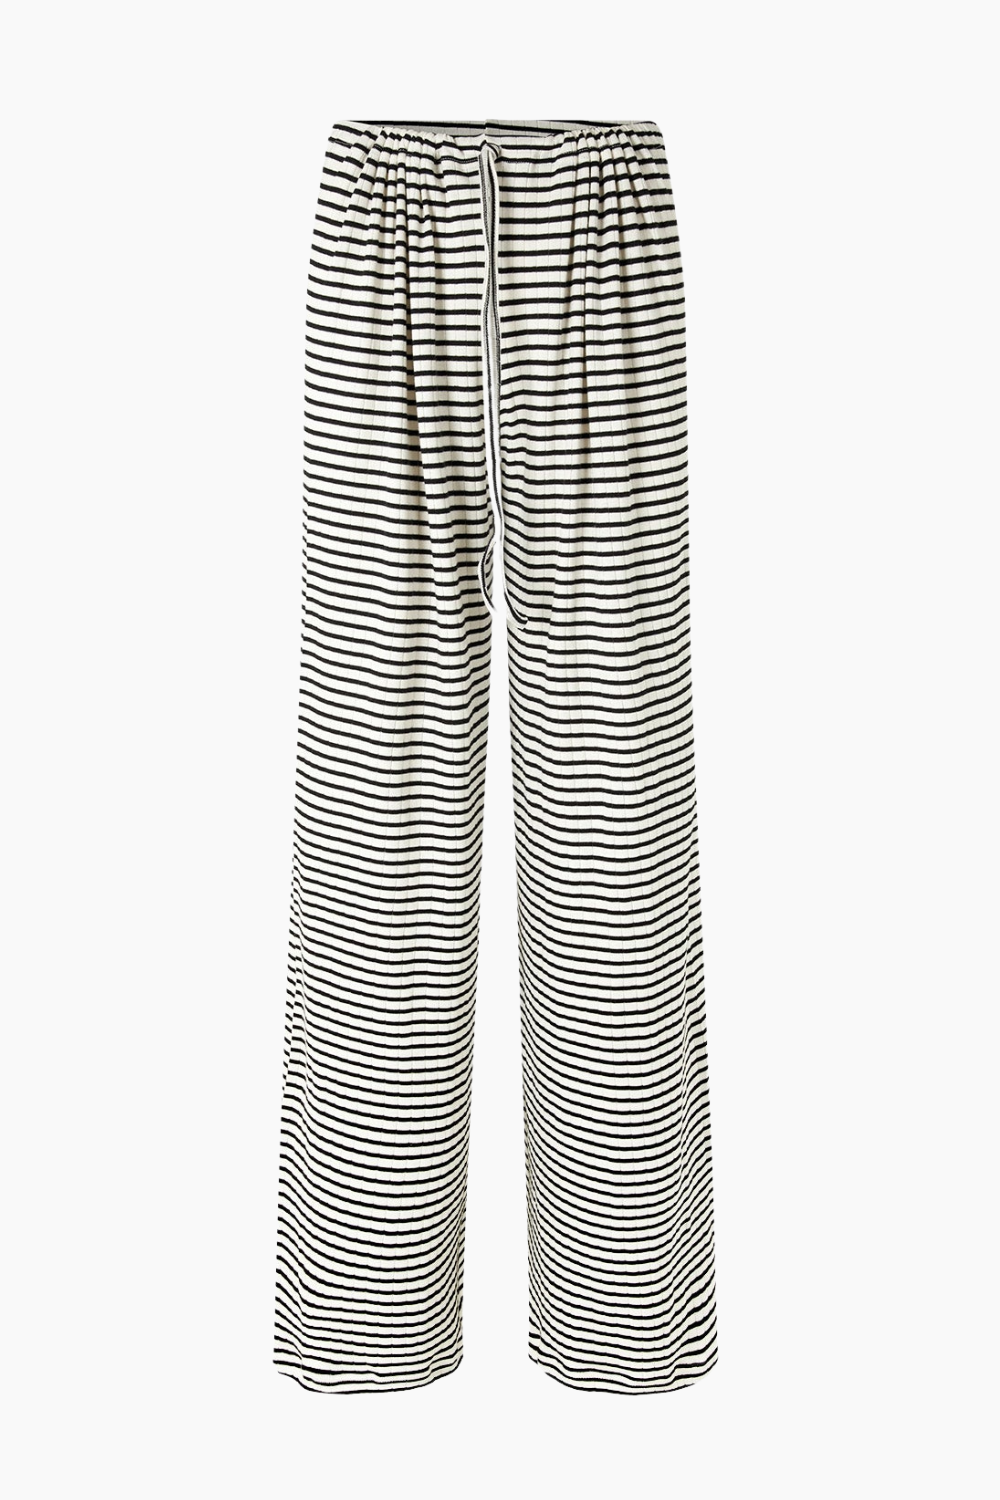 Billede af NPS Nova Pants Stripes - Ecru/Black - Nørgaard på Strøget - Stribet Size 1